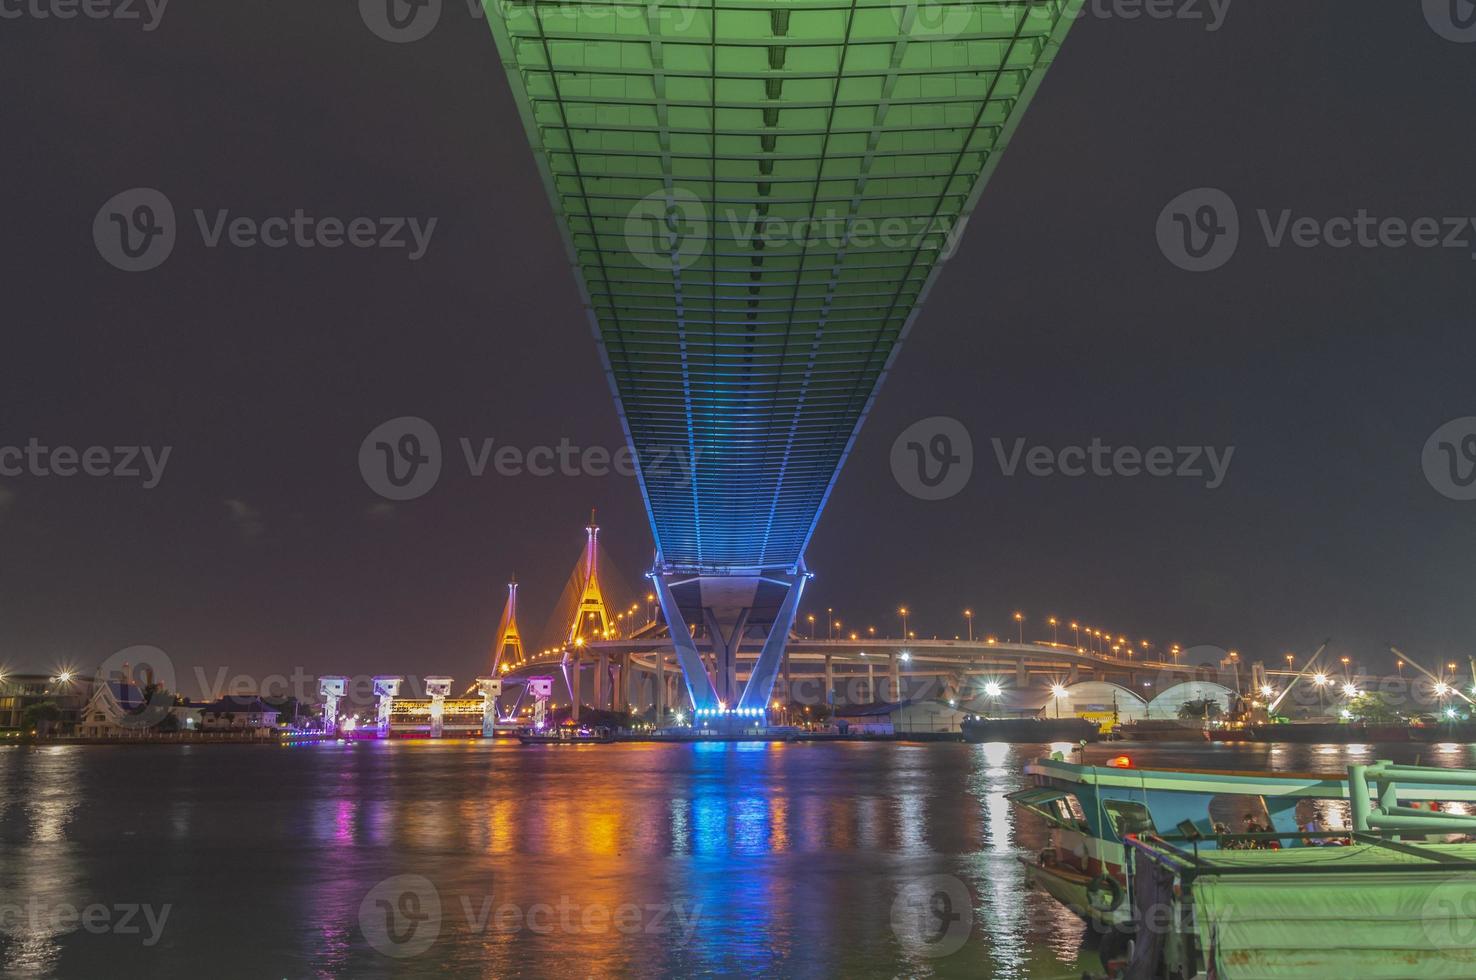 ponte bhumibol, ponte sul fiume chao phraya. accendi le luci in molti colori di notte. foto